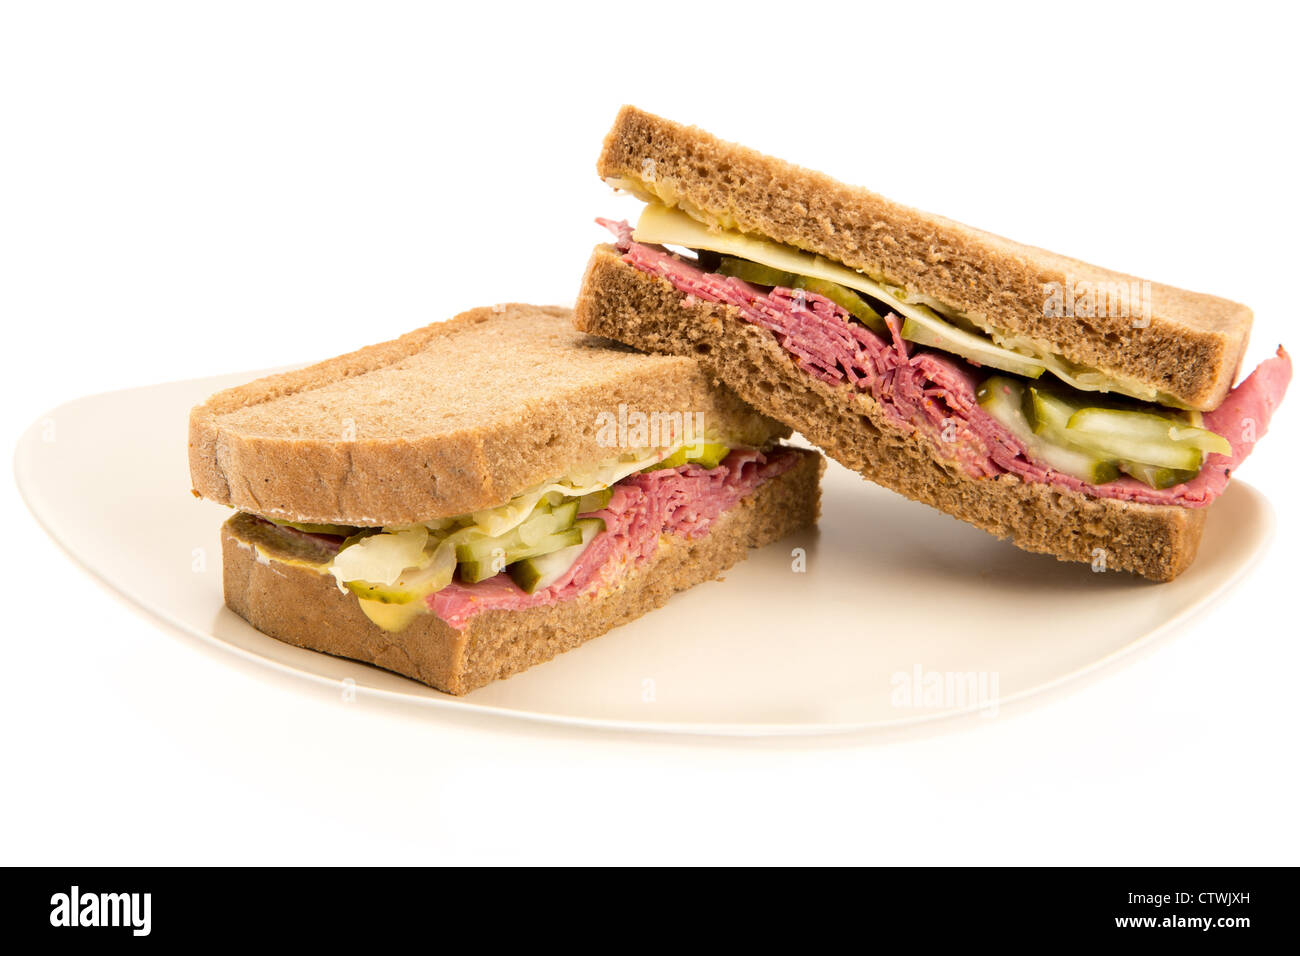 New York style sandwich au pastrami sur pain de seigle - studio photo avec un fond blanc Banque D'Images